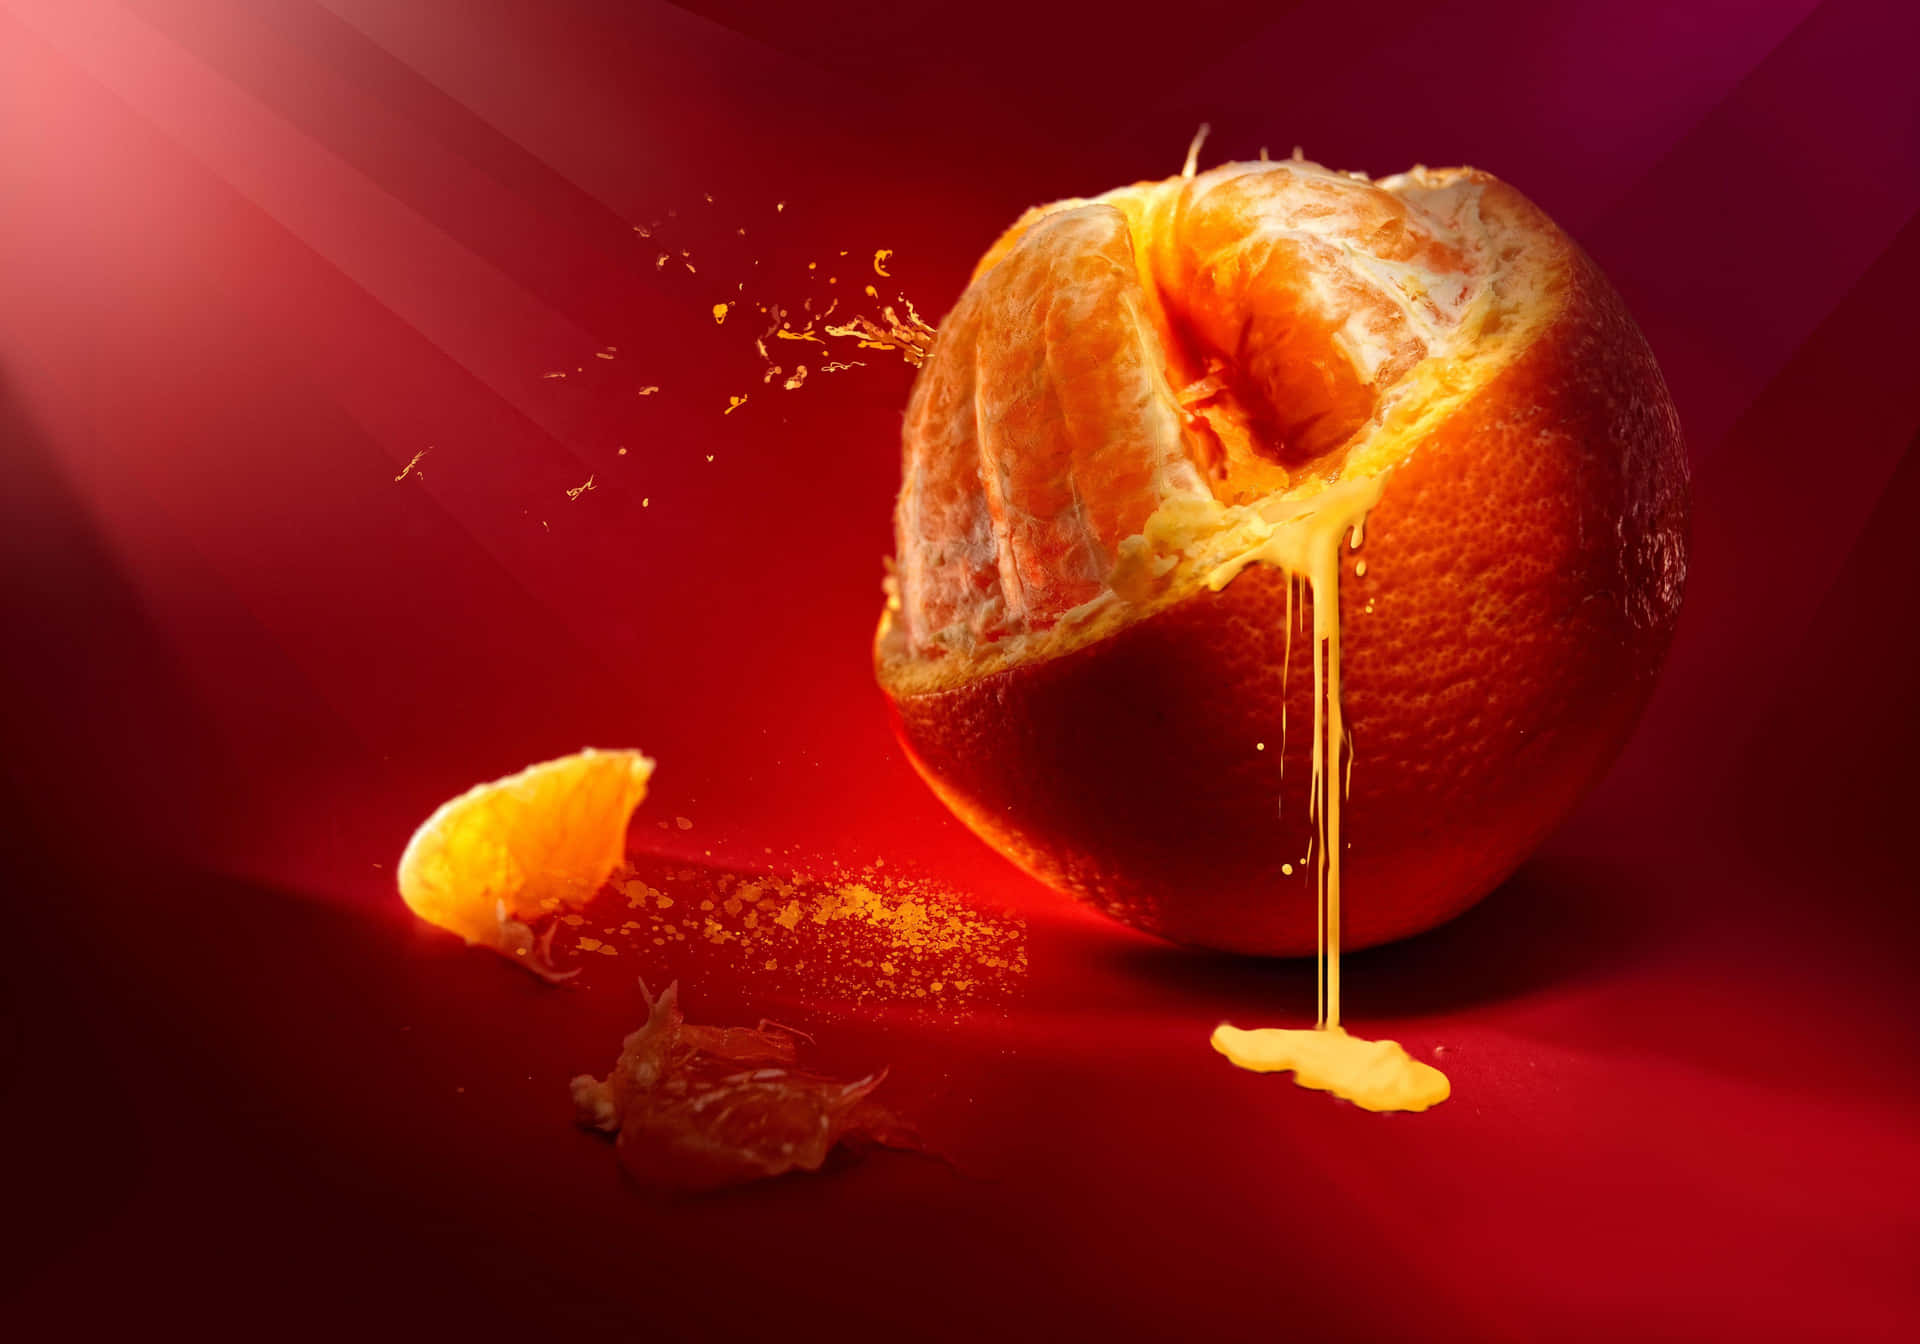 Bellissimaimmagine Ad Alta Risoluzione Di Un Frutto Arancione